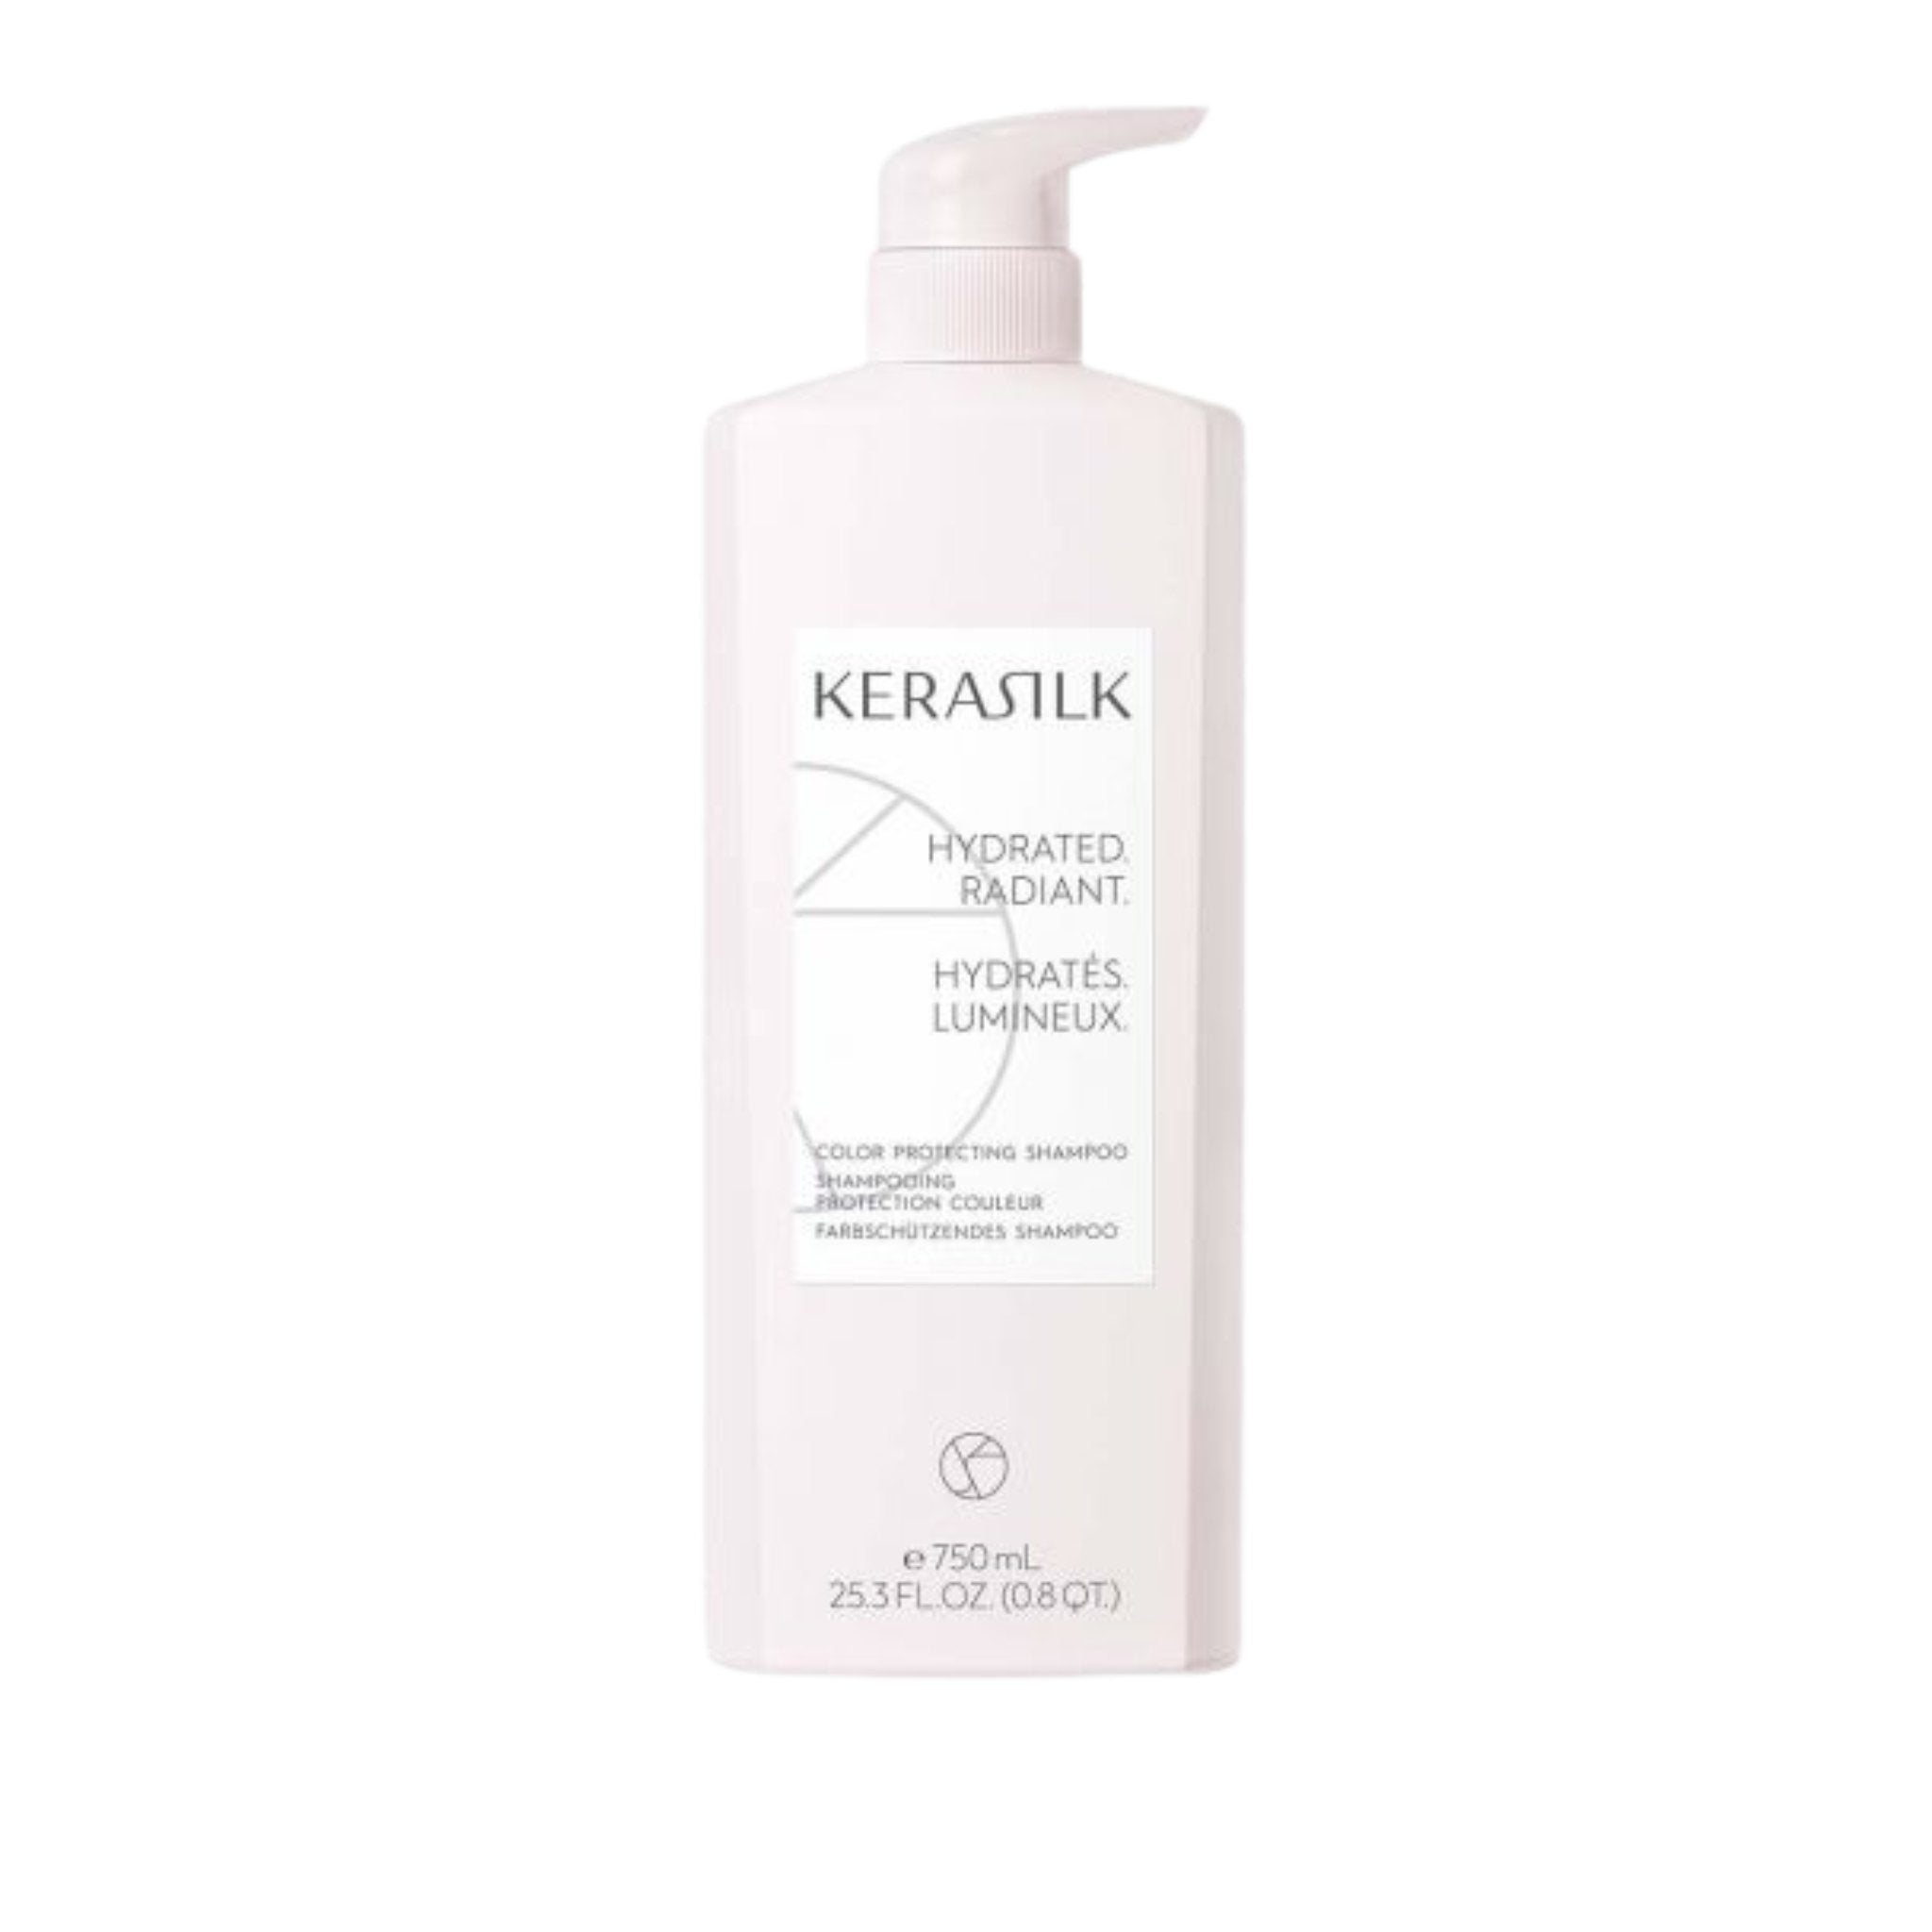 Kerasilk. Shampoing Protection Couleur - 750 ml - Concept C. Shop